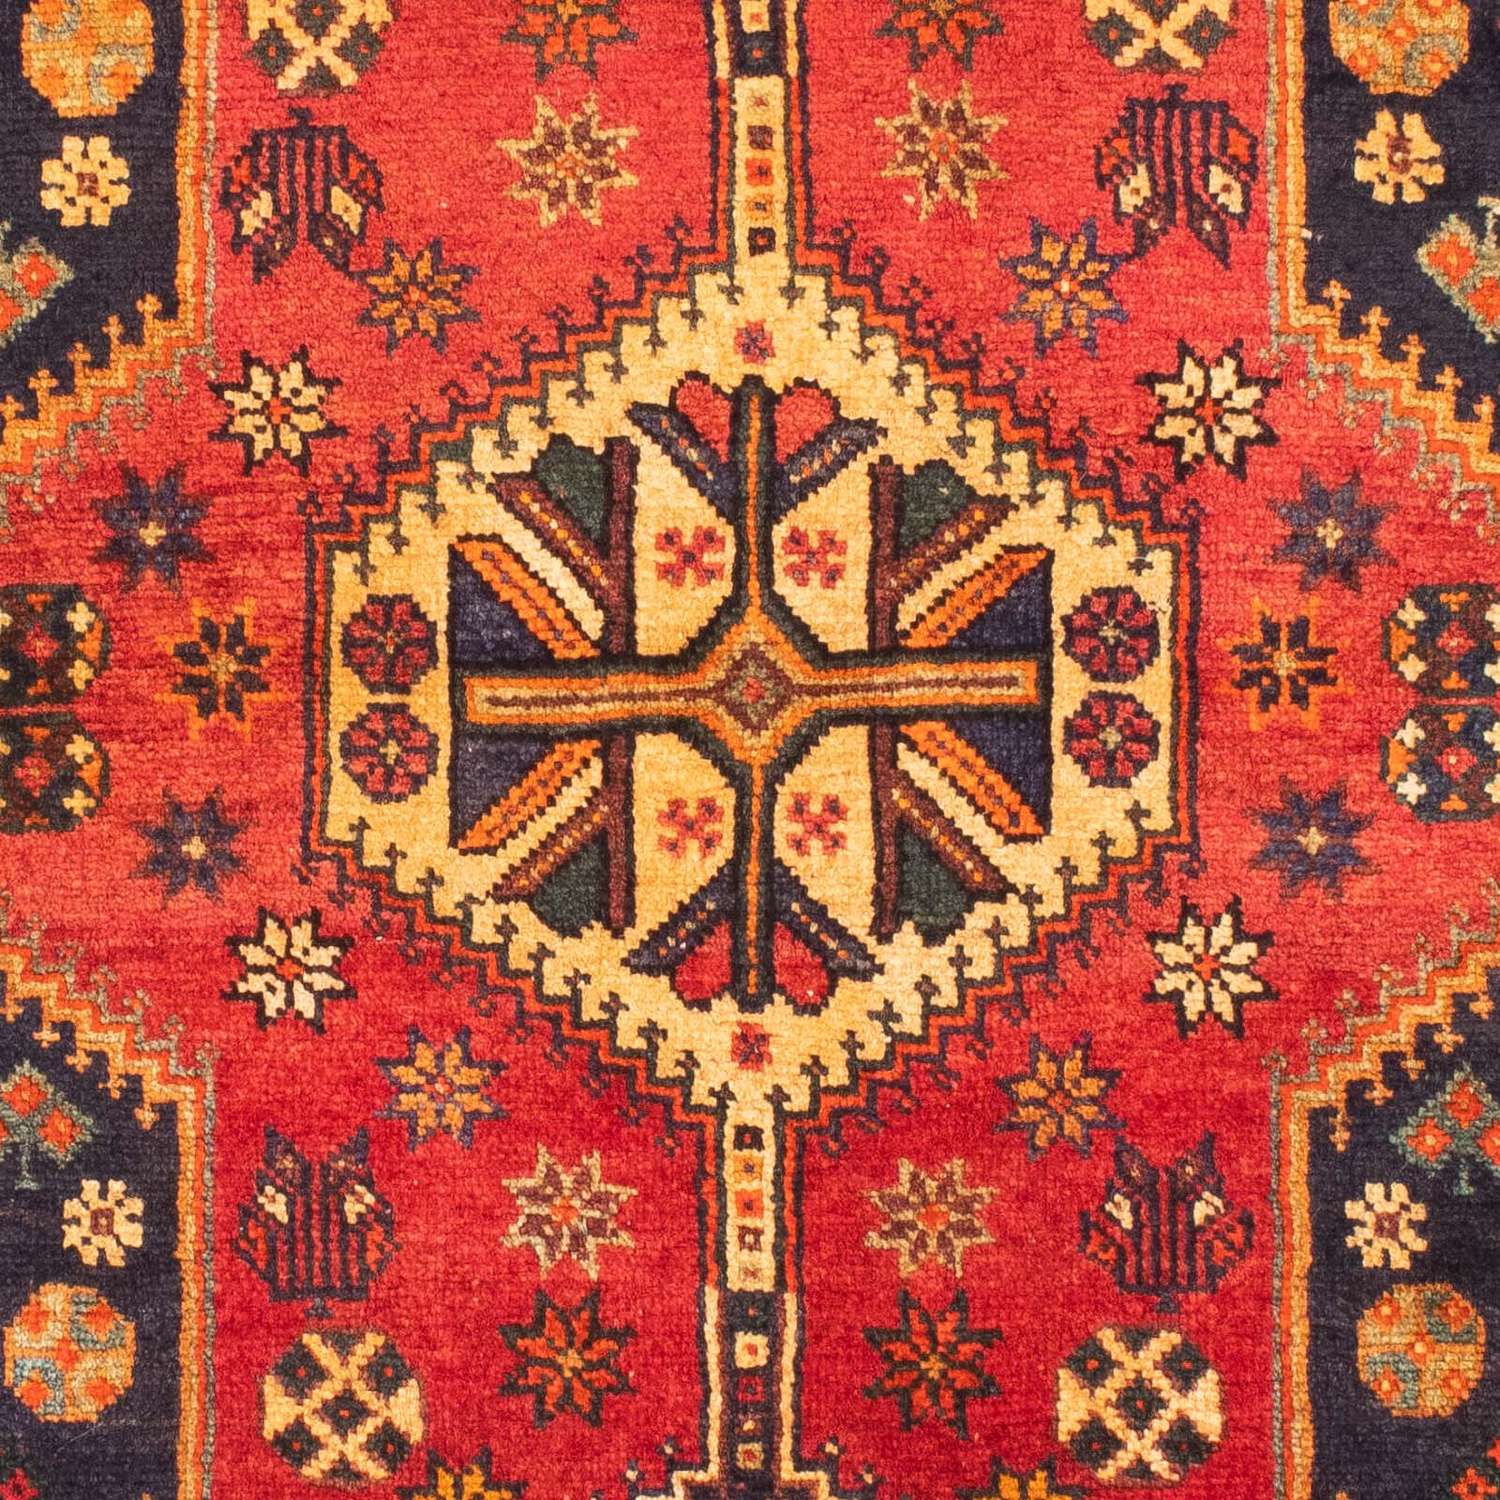 Tapis persan - Nomadic - 170 x 116 cm - rouge foncé